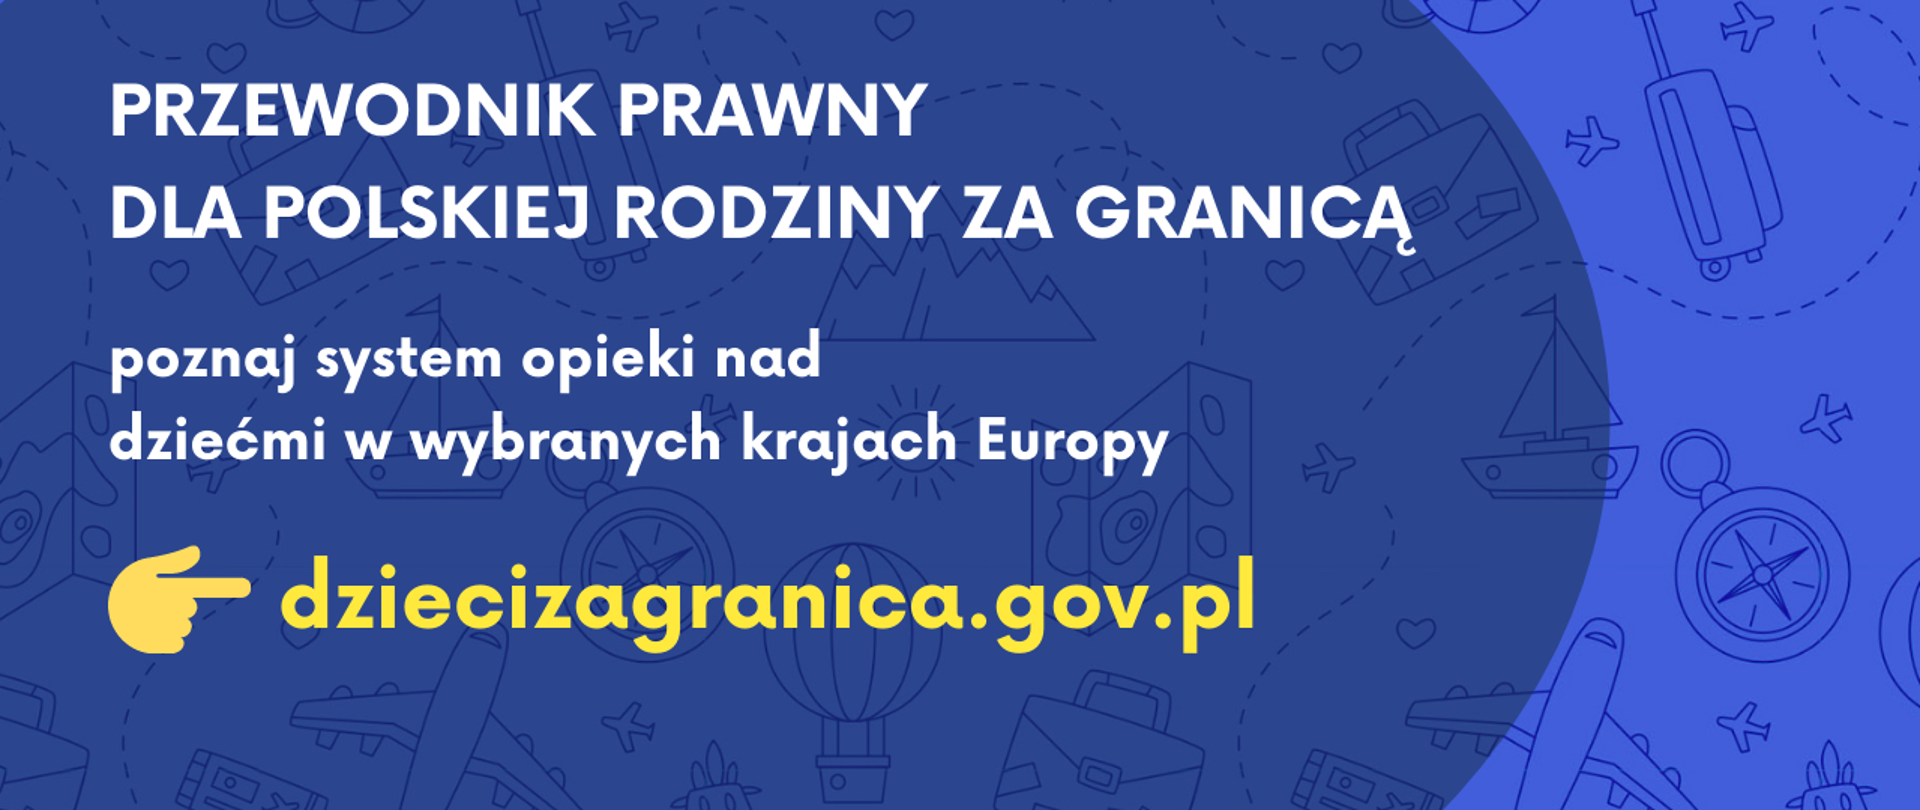 Przewodnik prawny dla polskiej rodziny za granicą, poznaj system opieki nad dziećmi w wybranych krajach Europy